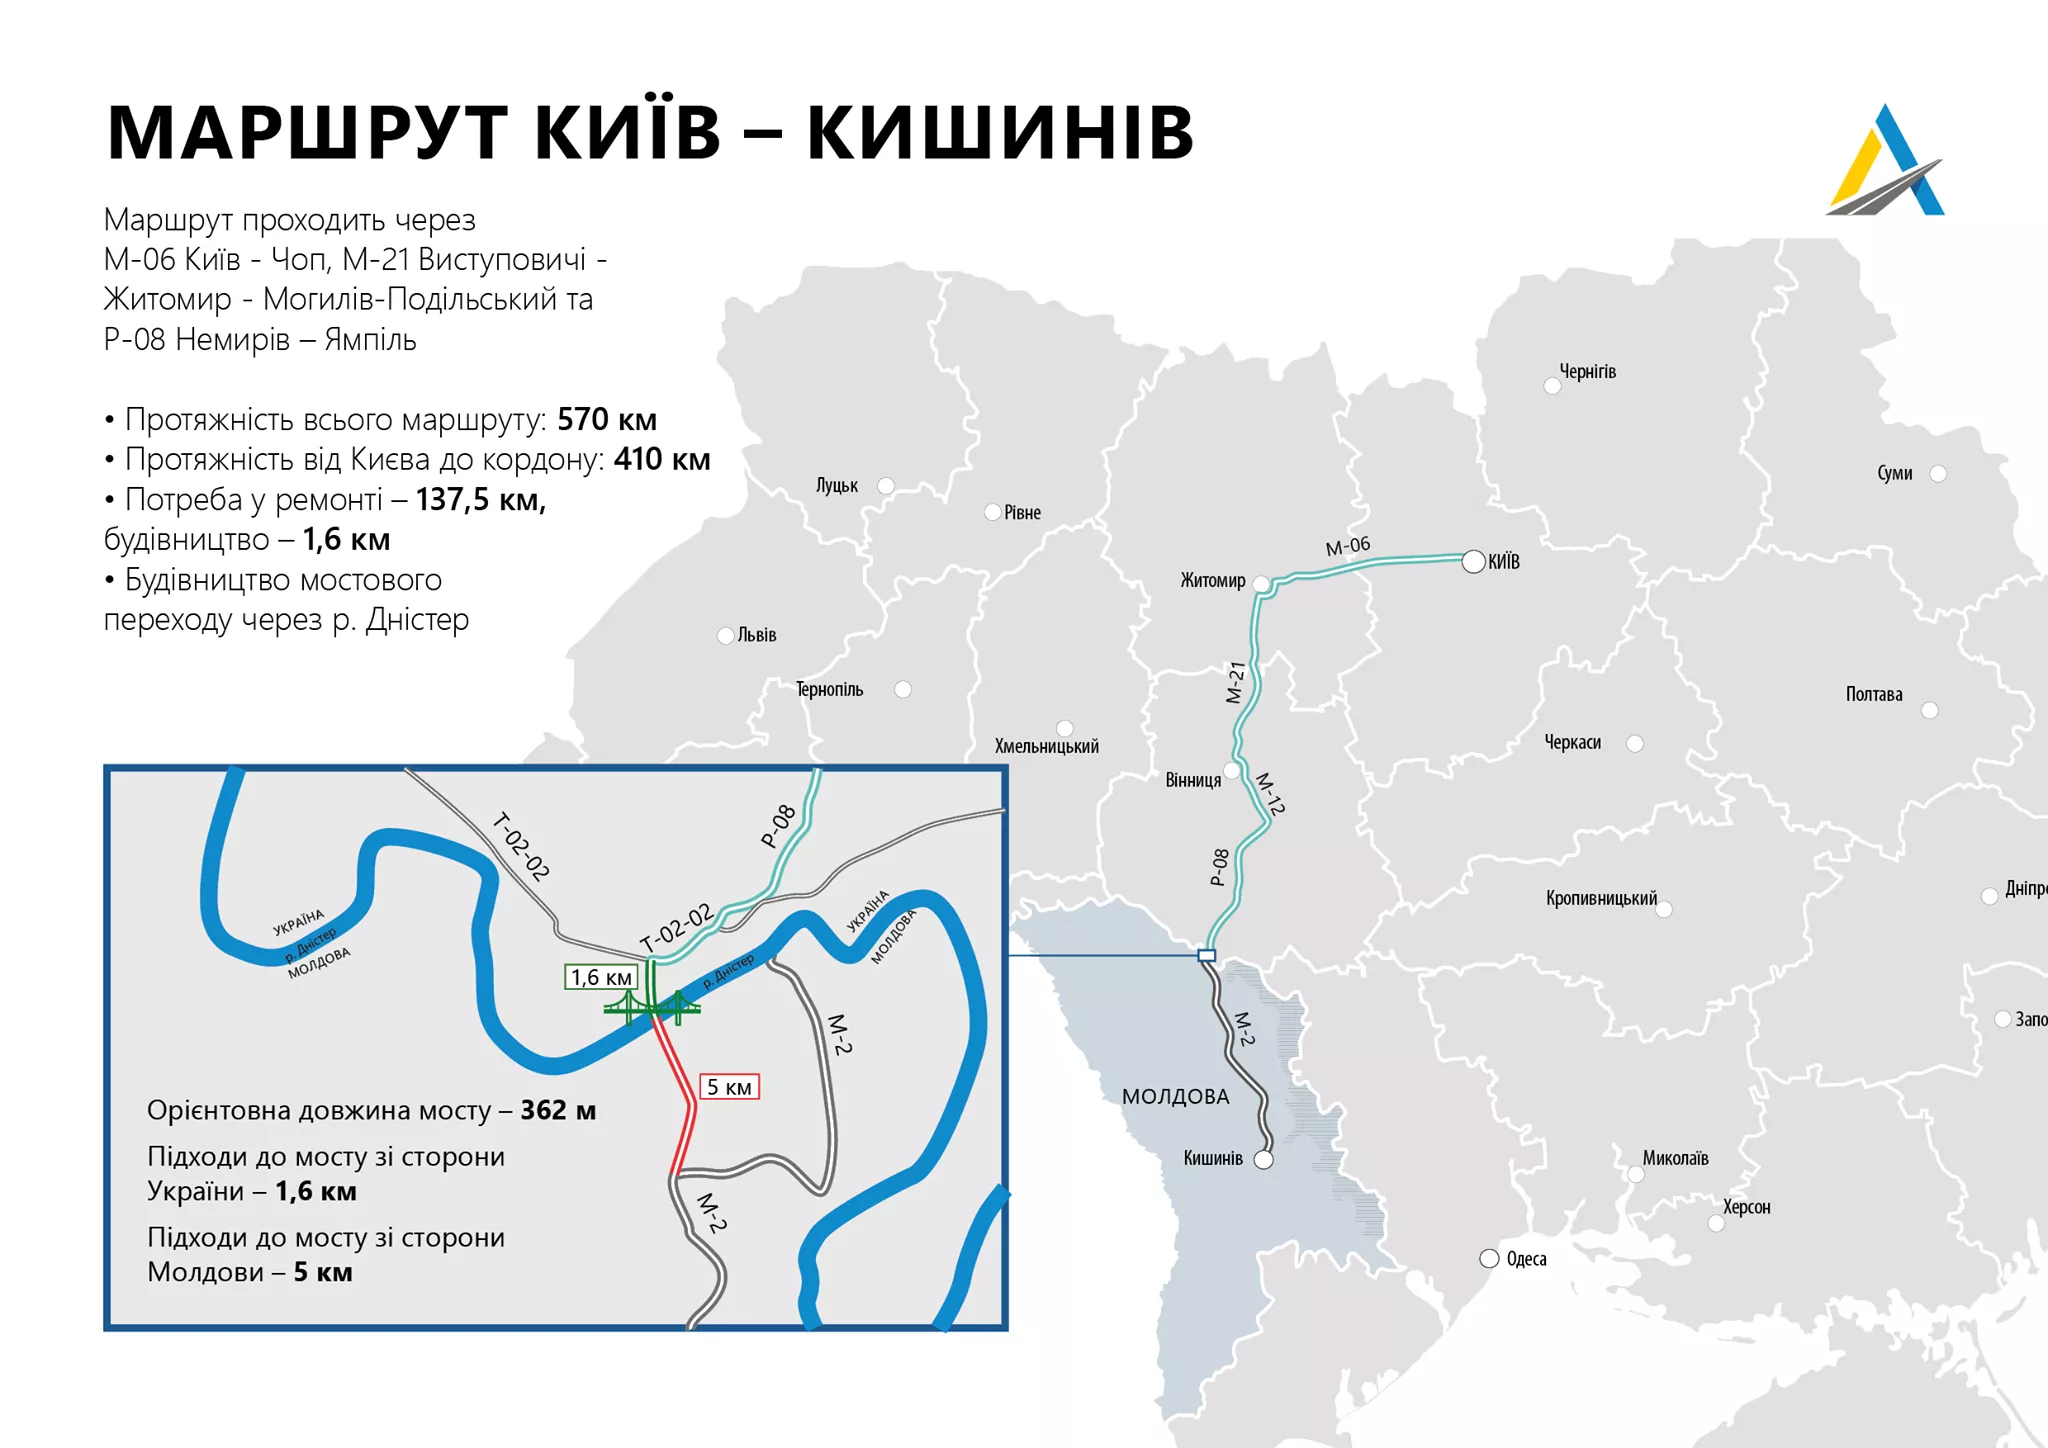 Дорога Немиров – Ямполь – это часть маршрута Киев – Кишинев